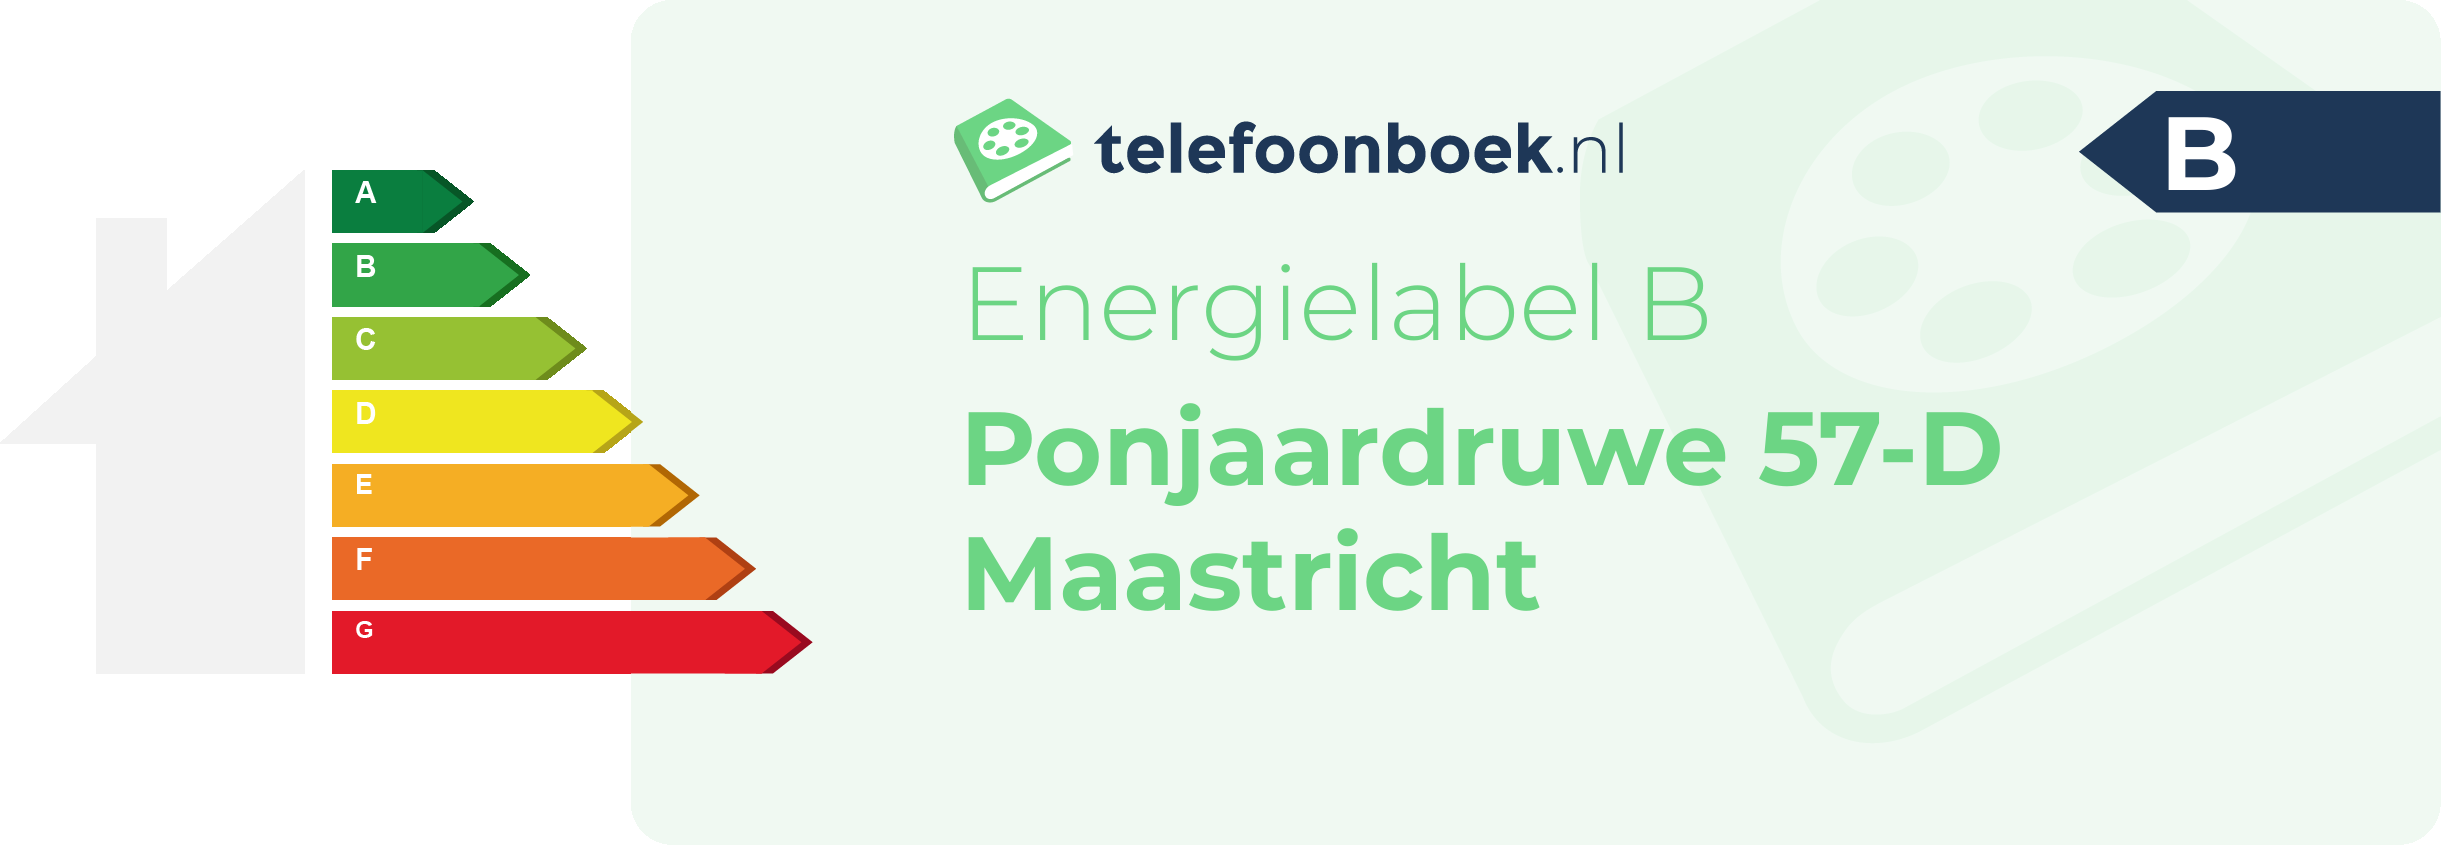 Energielabel Ponjaardruwe 57-D Maastricht